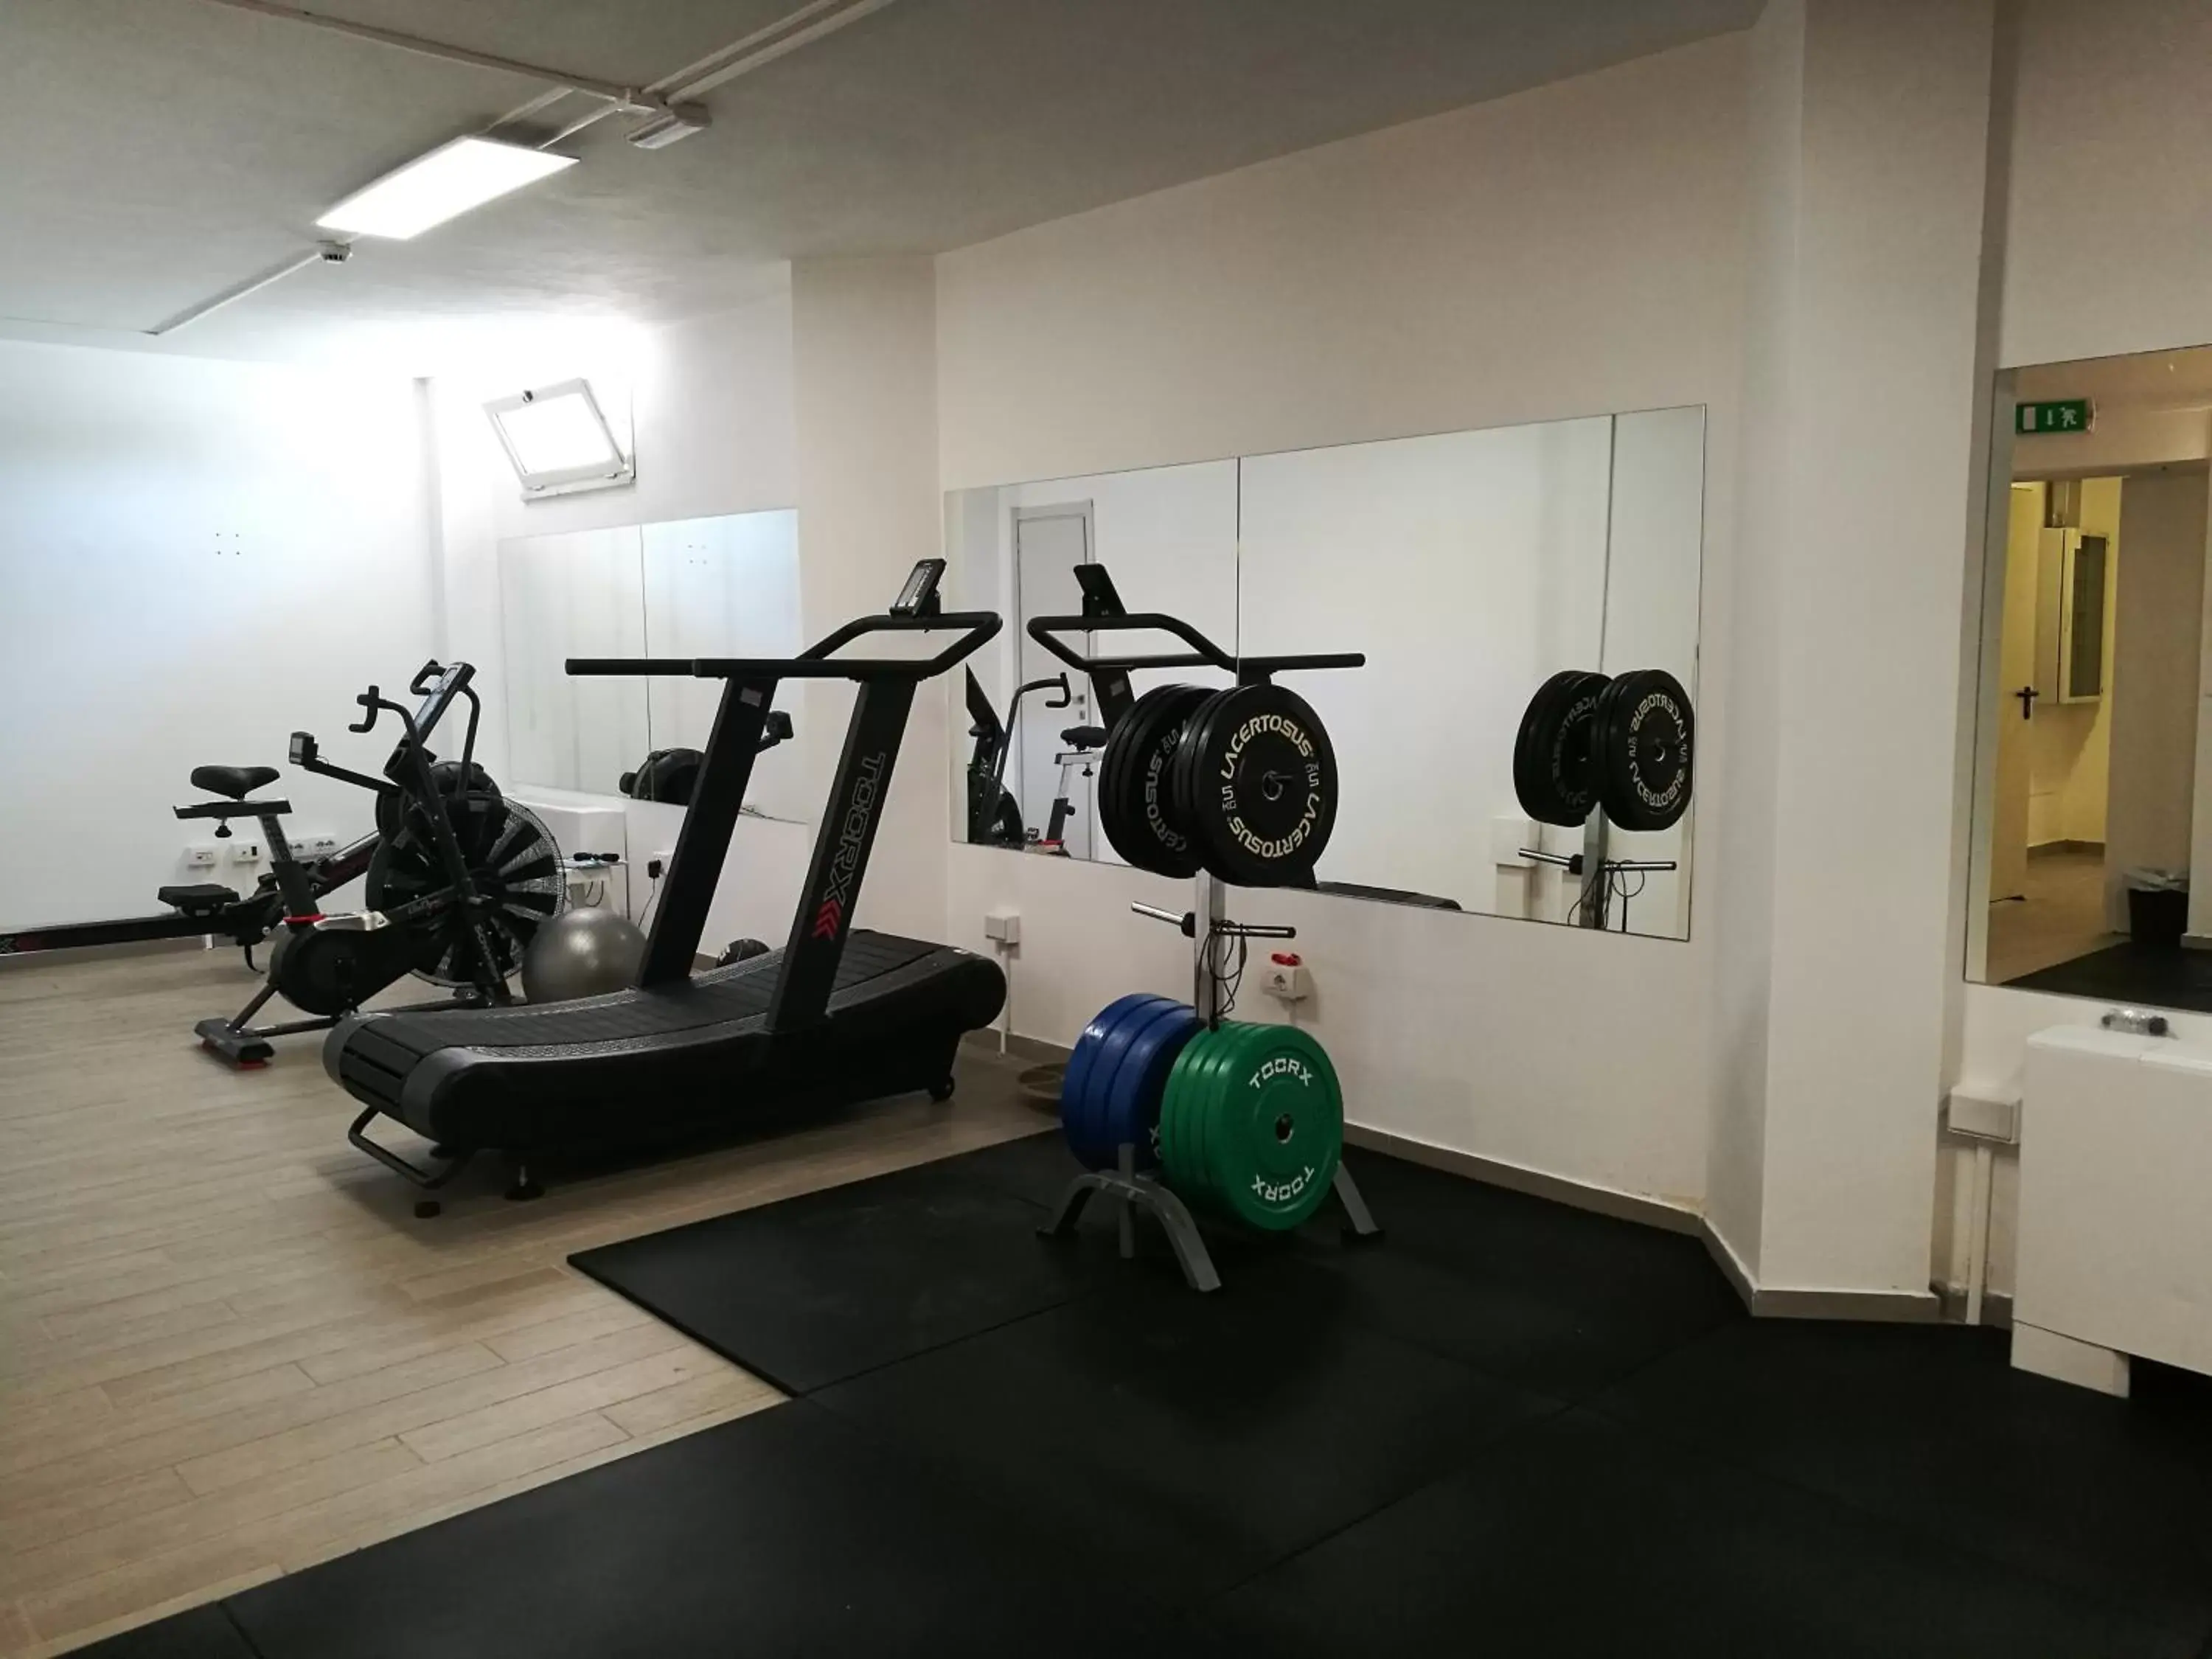 Fitness centre/facilities, Fitness Center/Facilities in Alma di Alghero Hotel